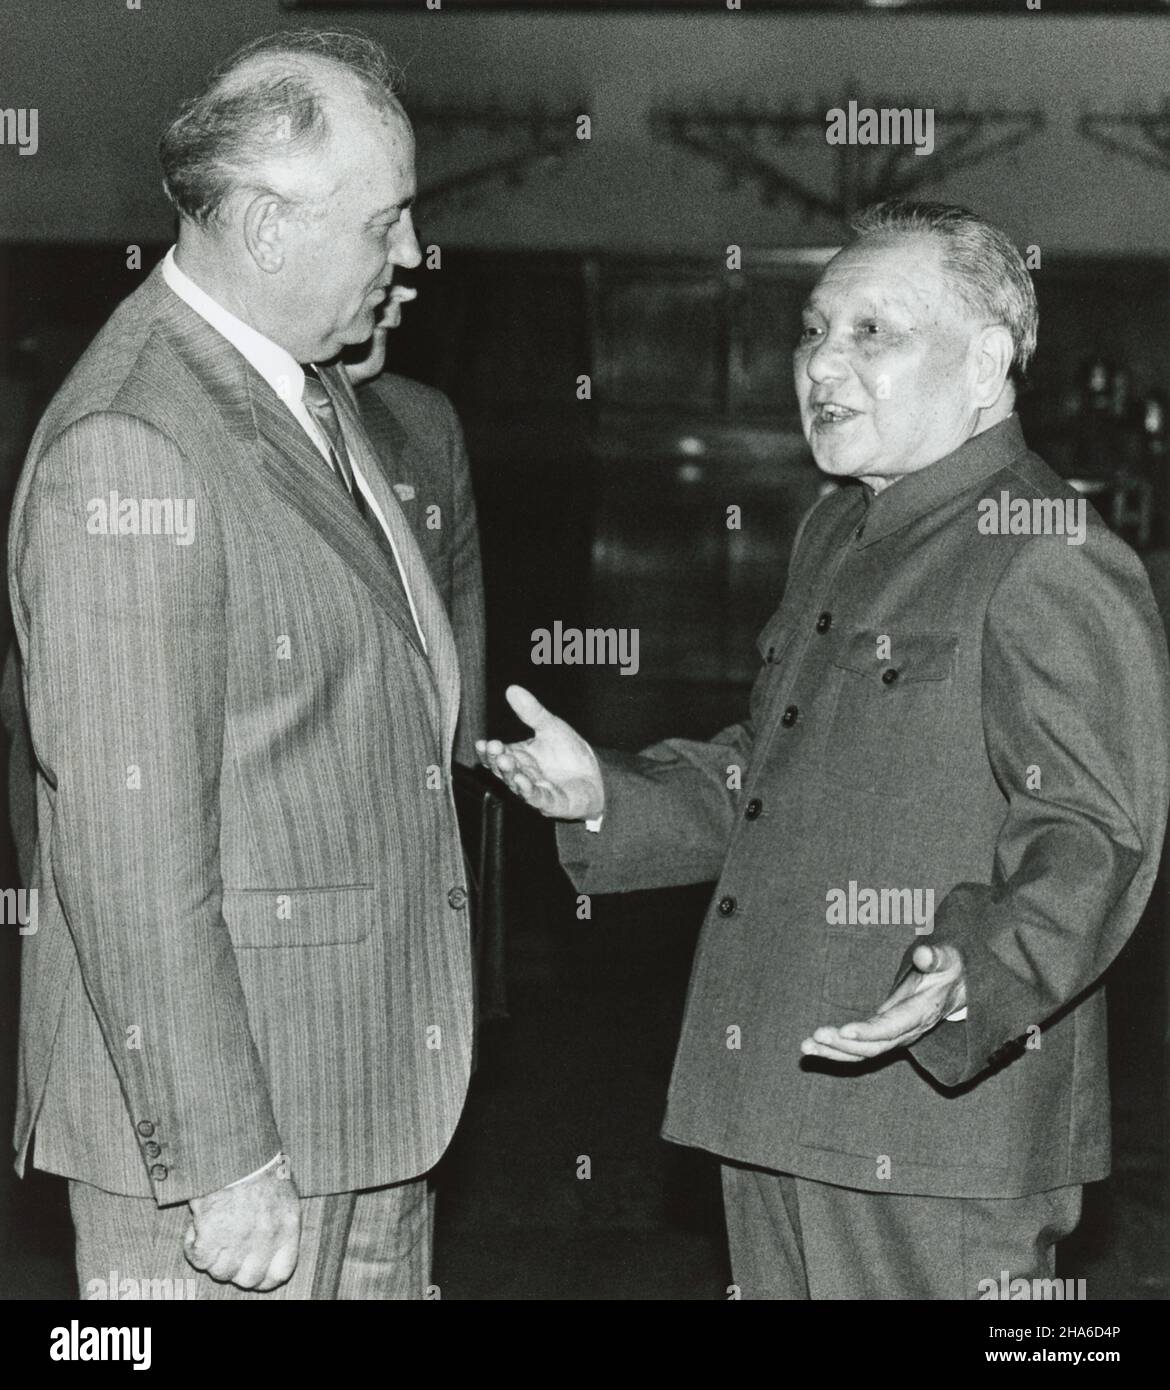 Der ehemalige chinesische Führer Deng Xiaoping begrüßt den ehemaligen Führer der Sowjetunion, Michail Gorbatschow, im Mai 1989 in der Großen Halle des Volkes. Ihr Treffen gilt als das Ende der "chinesisch-sowjetischen Spaltung". Stockfoto